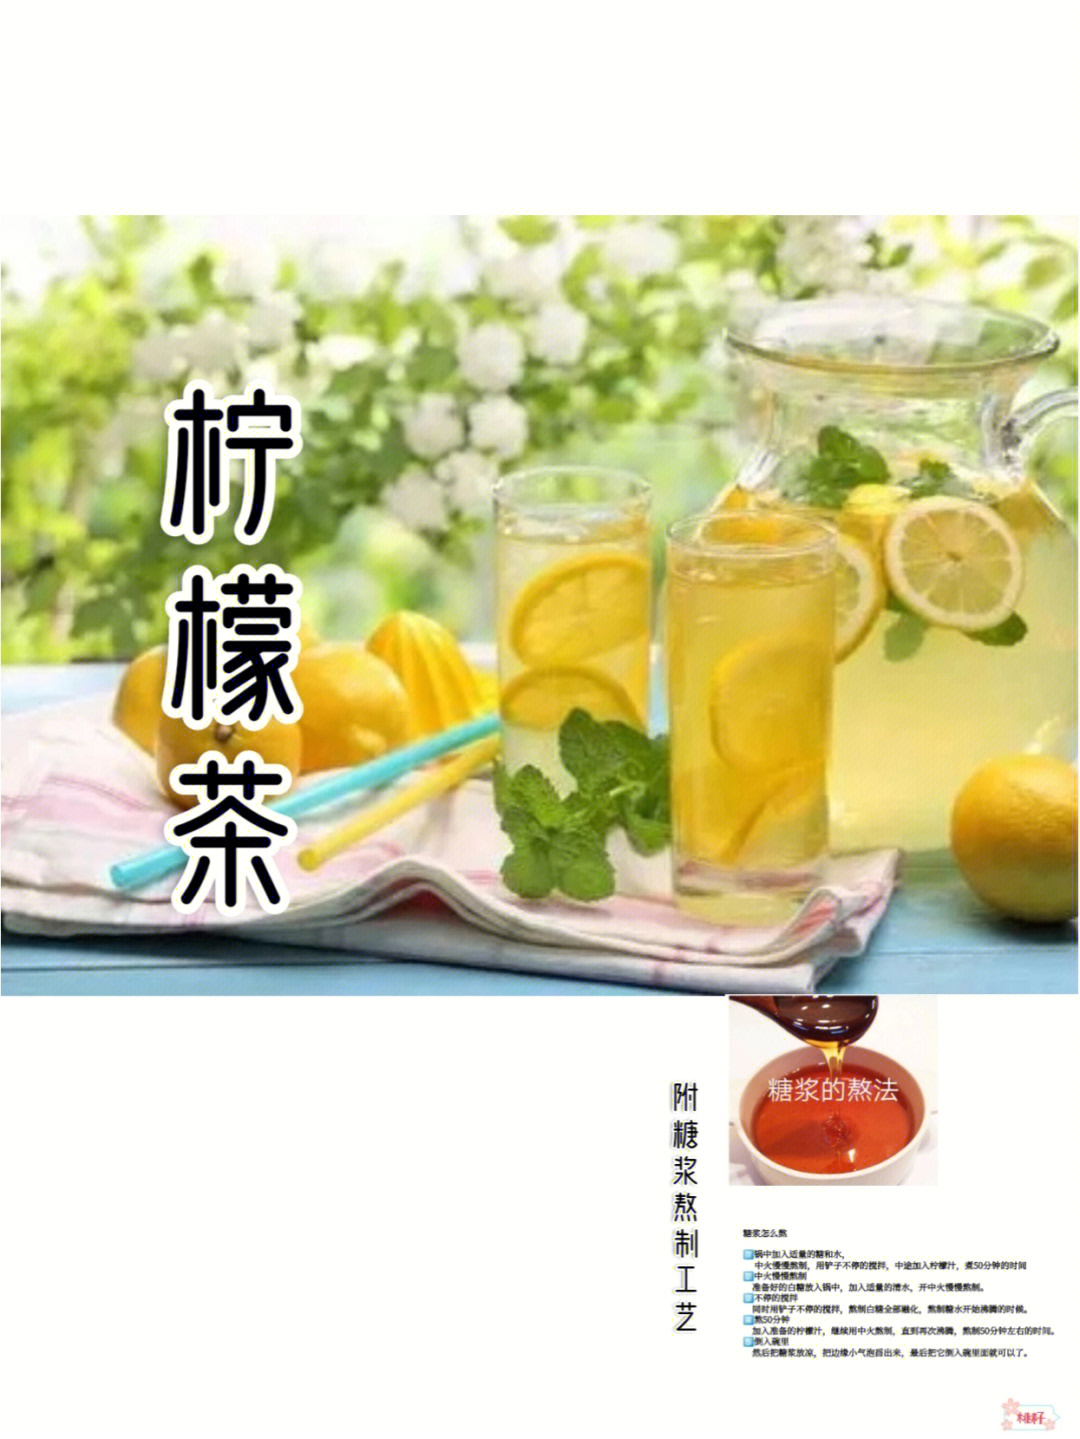 柠檬茶功效与作用生津开胃,美容养颜,化痰止咳柠檬中含有丰富的维生素